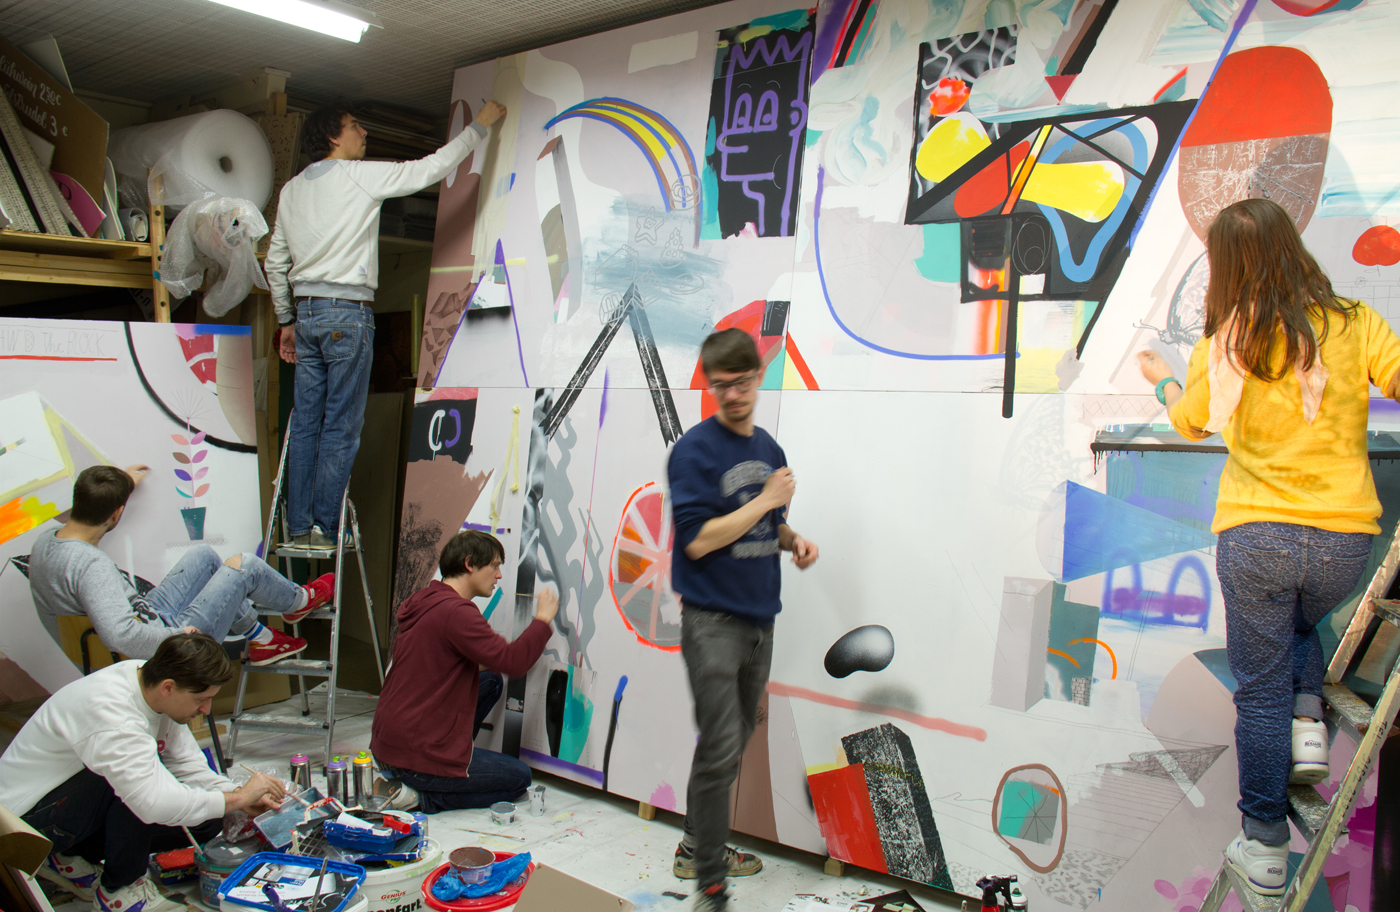 Work in Progress: KLUB7 beim malen des Gemeinschaftswerks 'Behind the  Block' auf Leinwand (400 x 450 cm)